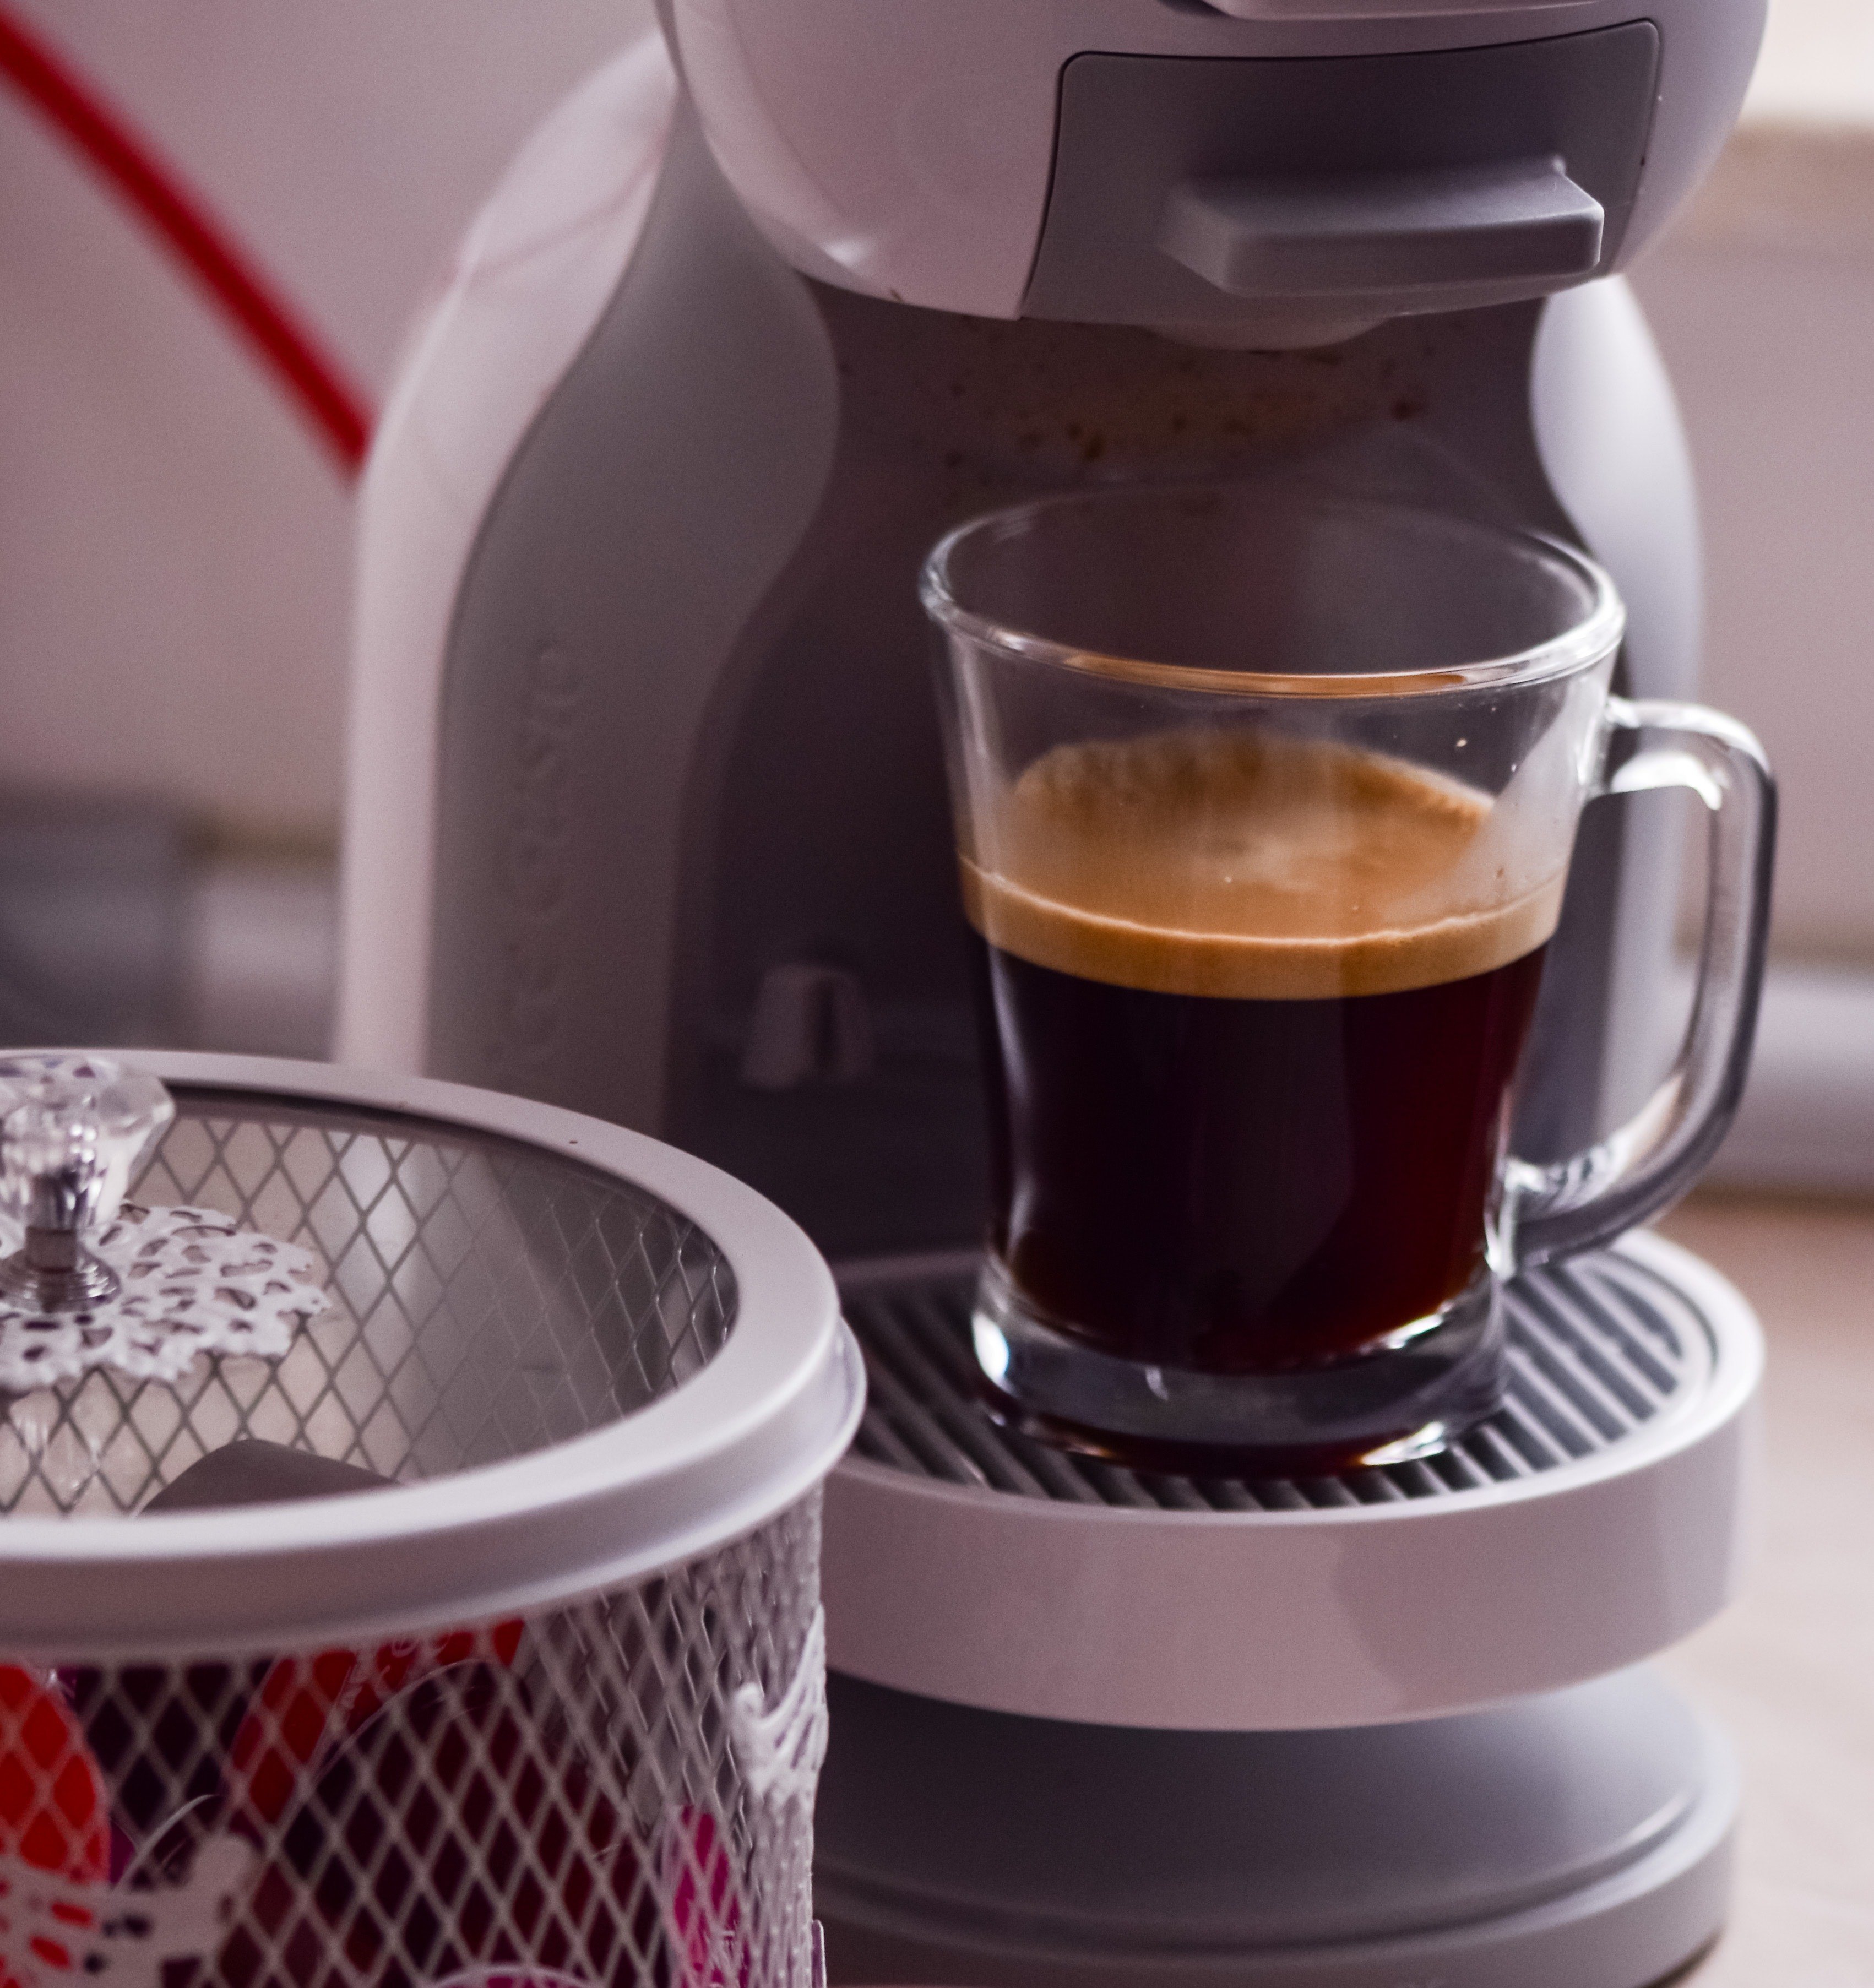 Mise à disposition gratuite de machine à café pour entreprise